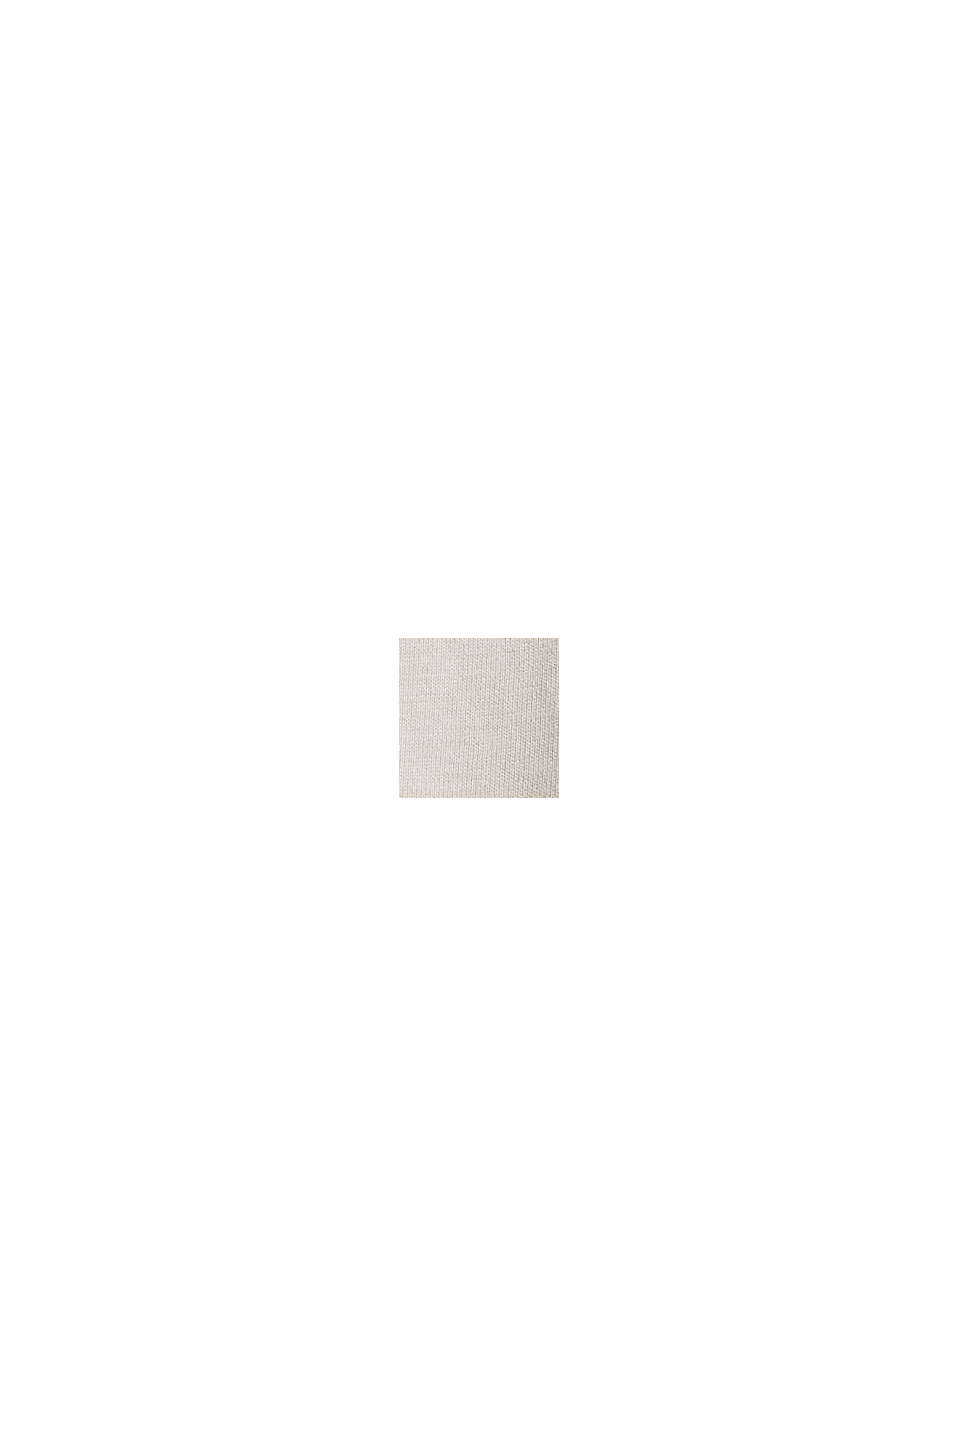 Maglia a manica lunga in  jersey stampata con cotone biologico, CREAM BEIGE, swatch